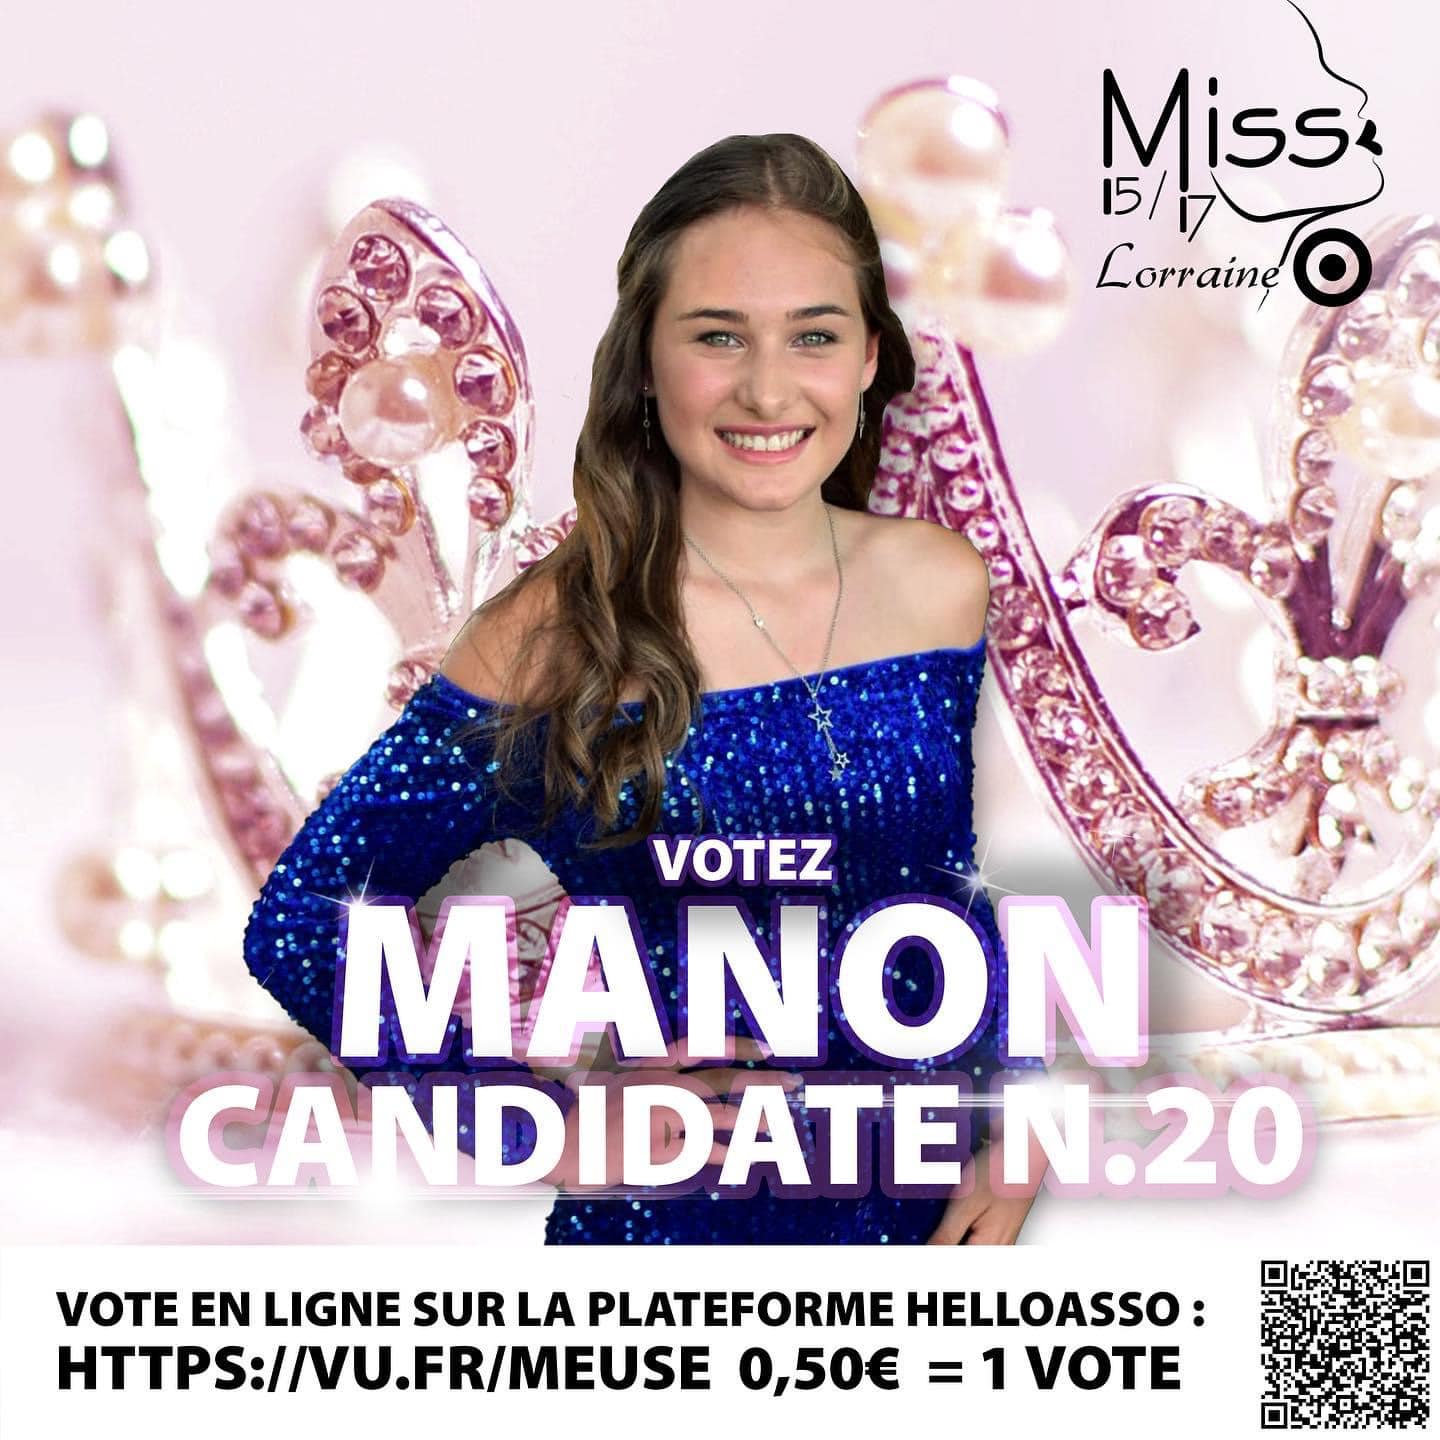 Candidates_Vosgiennes_Miss_15-17_Lorraine (1)